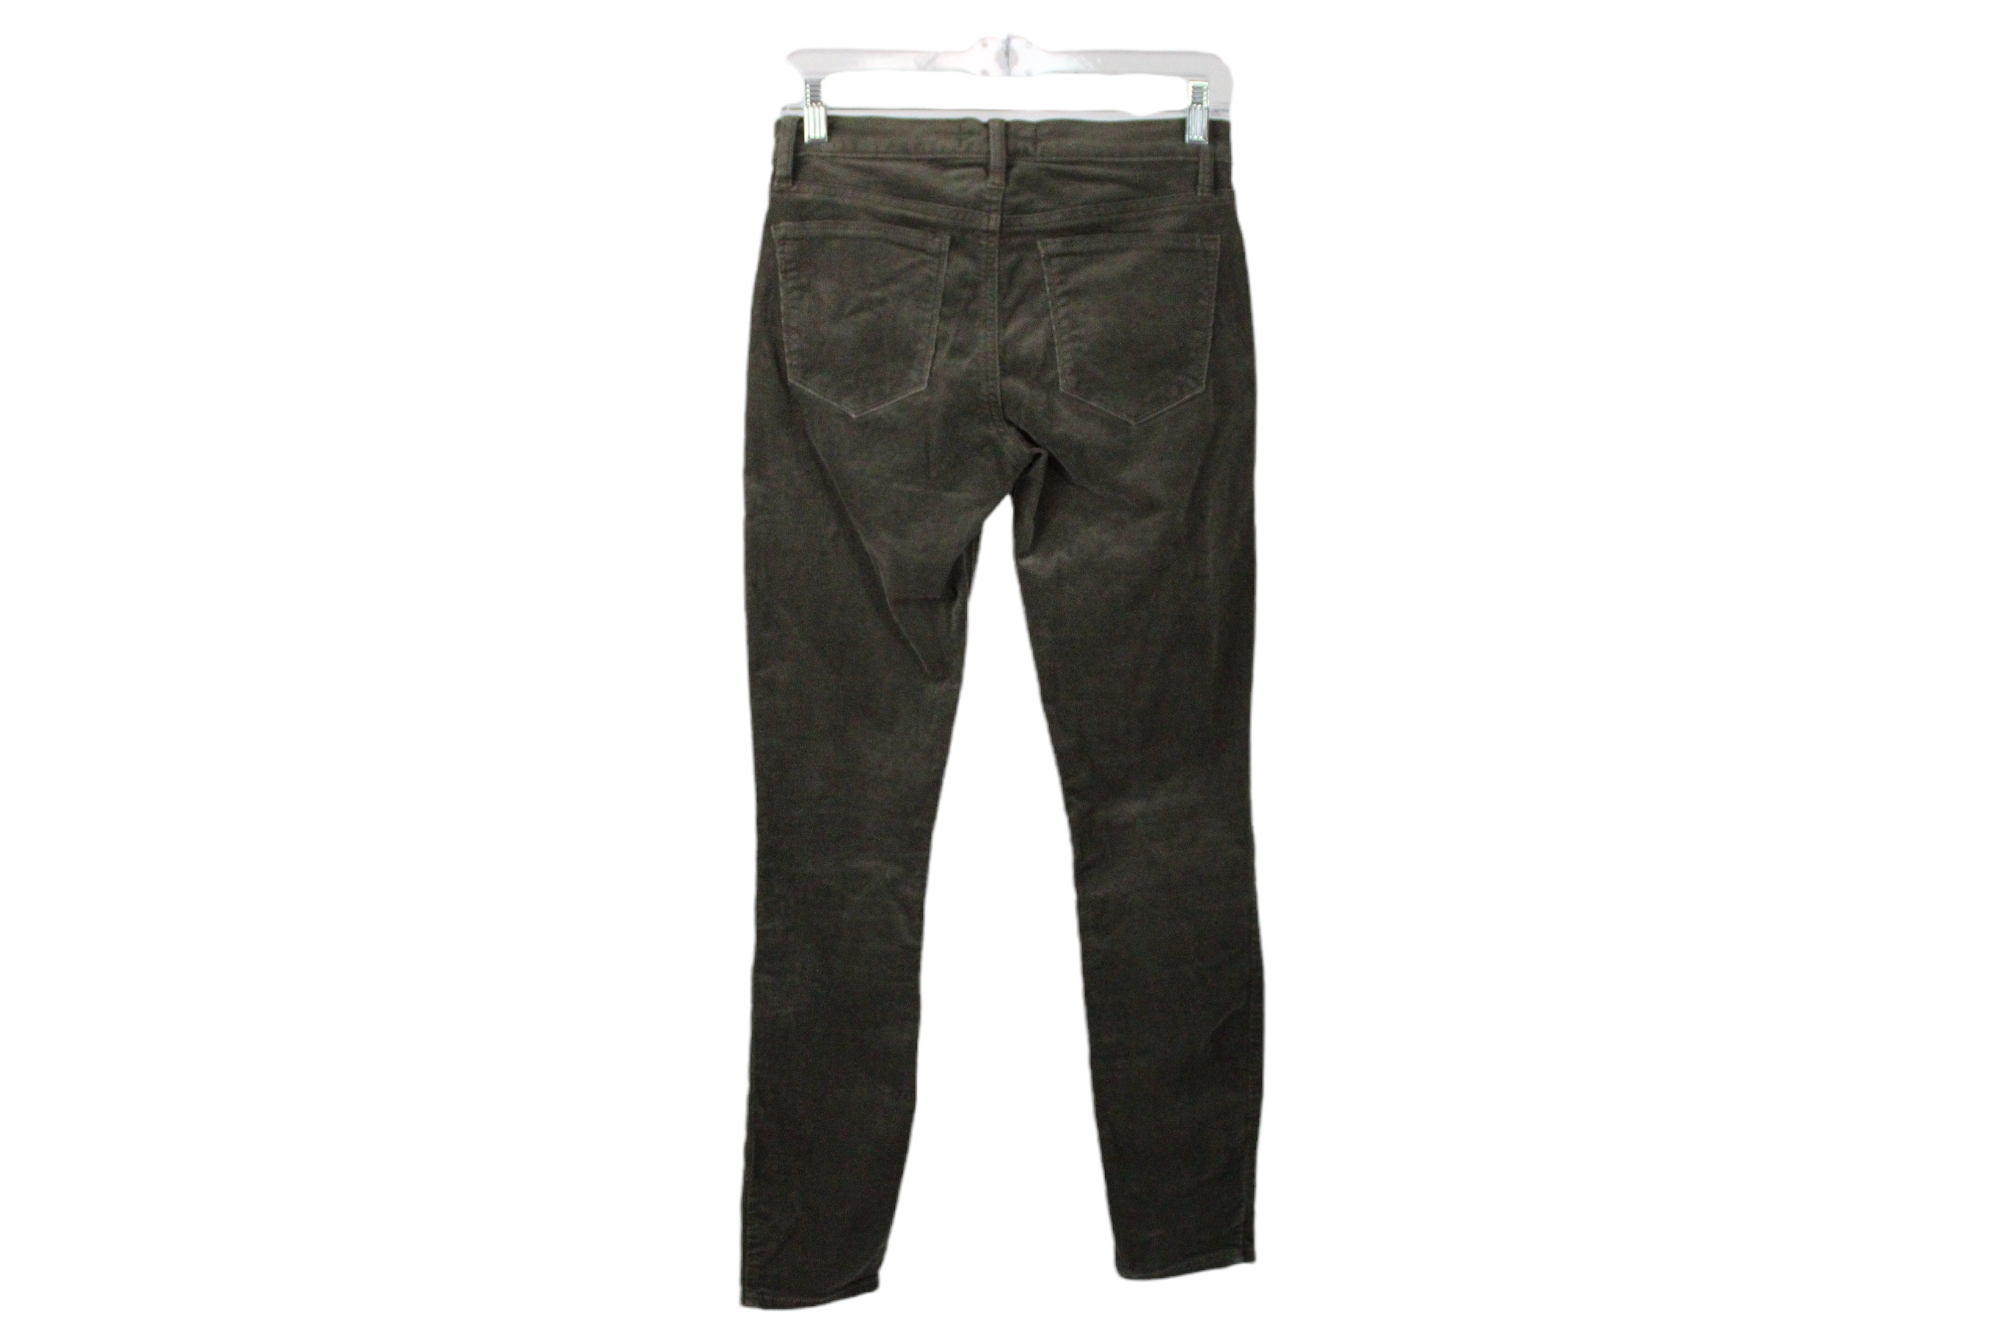 Gap True Skinny Green Corduroy Pants | 26R/2